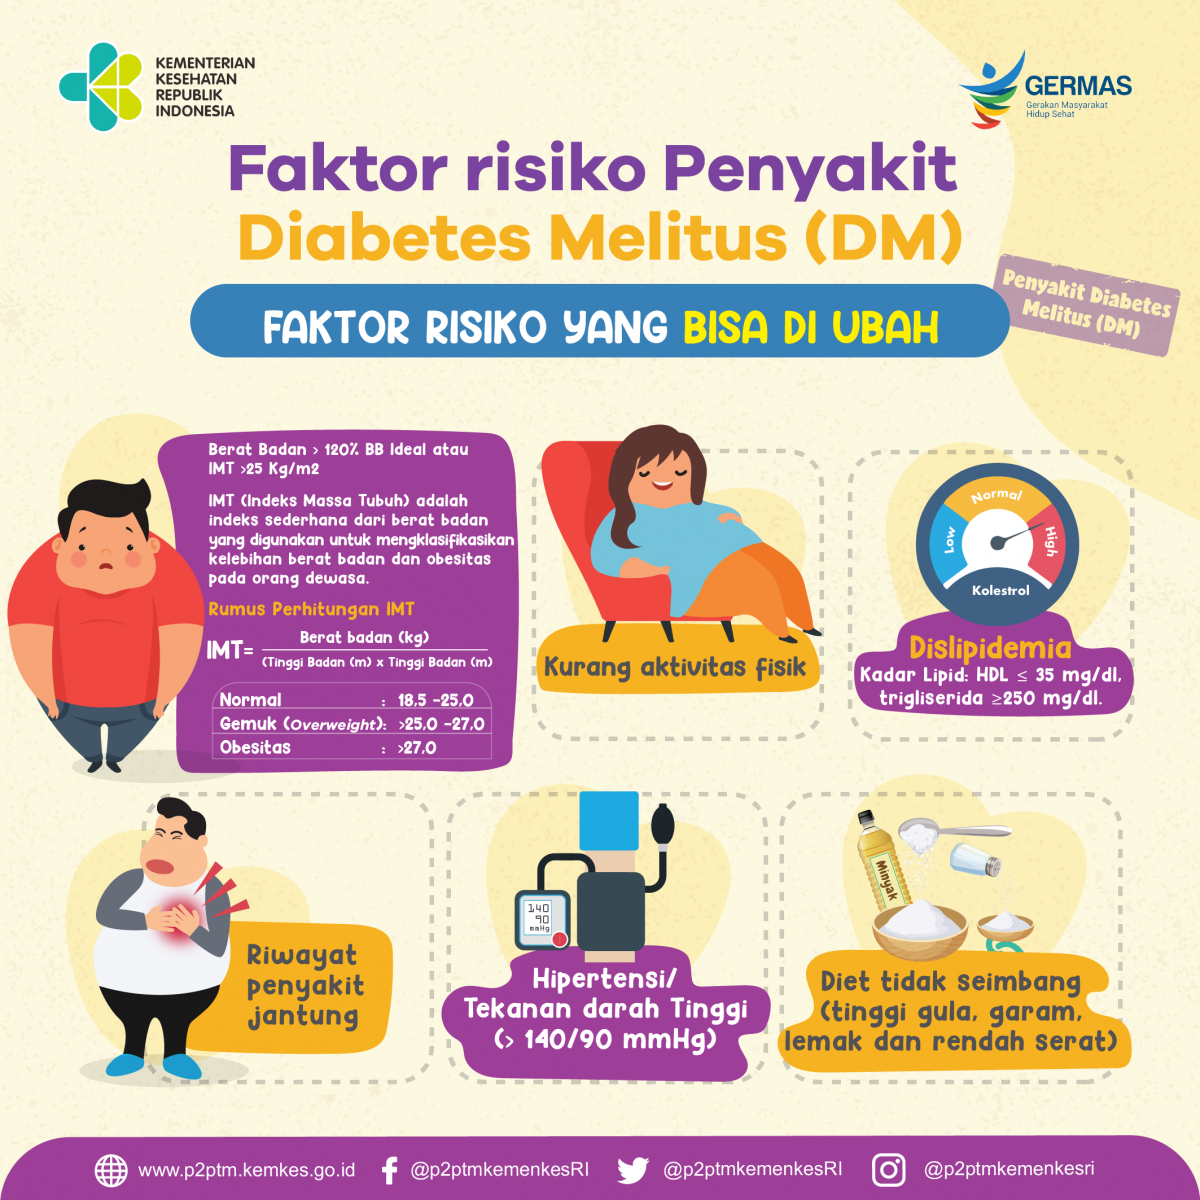 Kenali faktor risiko penyakit Diabetes Melitus yang bisa diubah